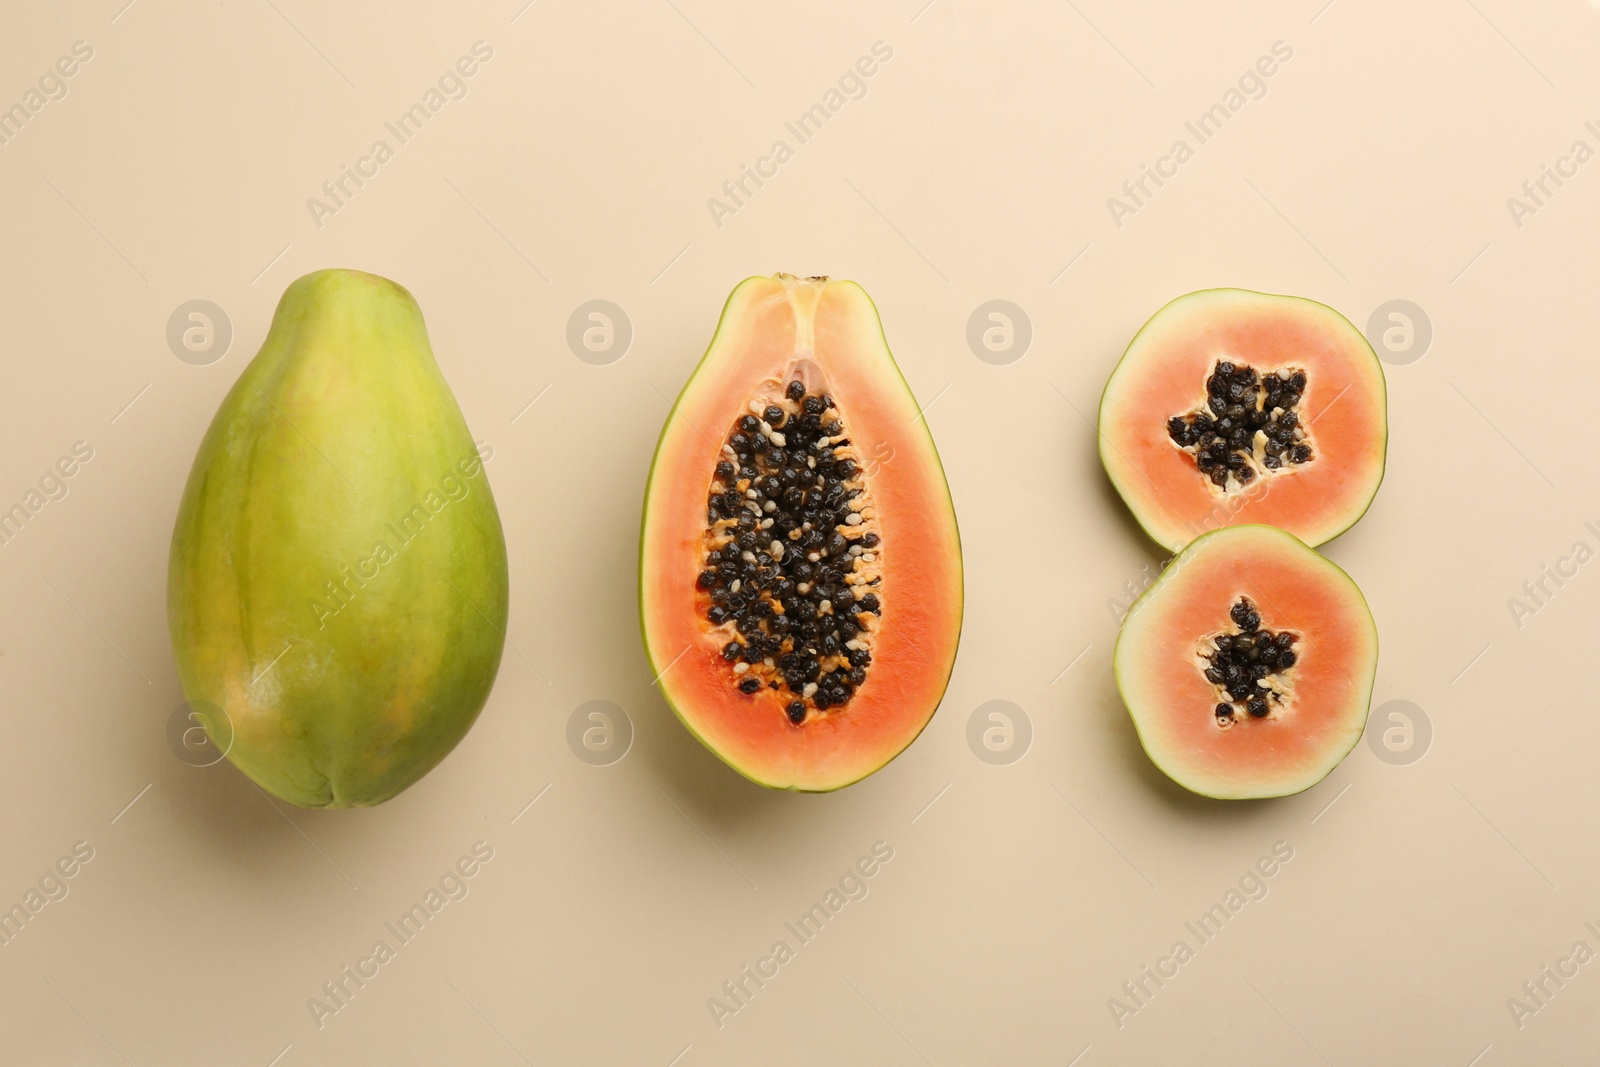 Photo of Fresh ripe papaya fruits on beige background, flat lay